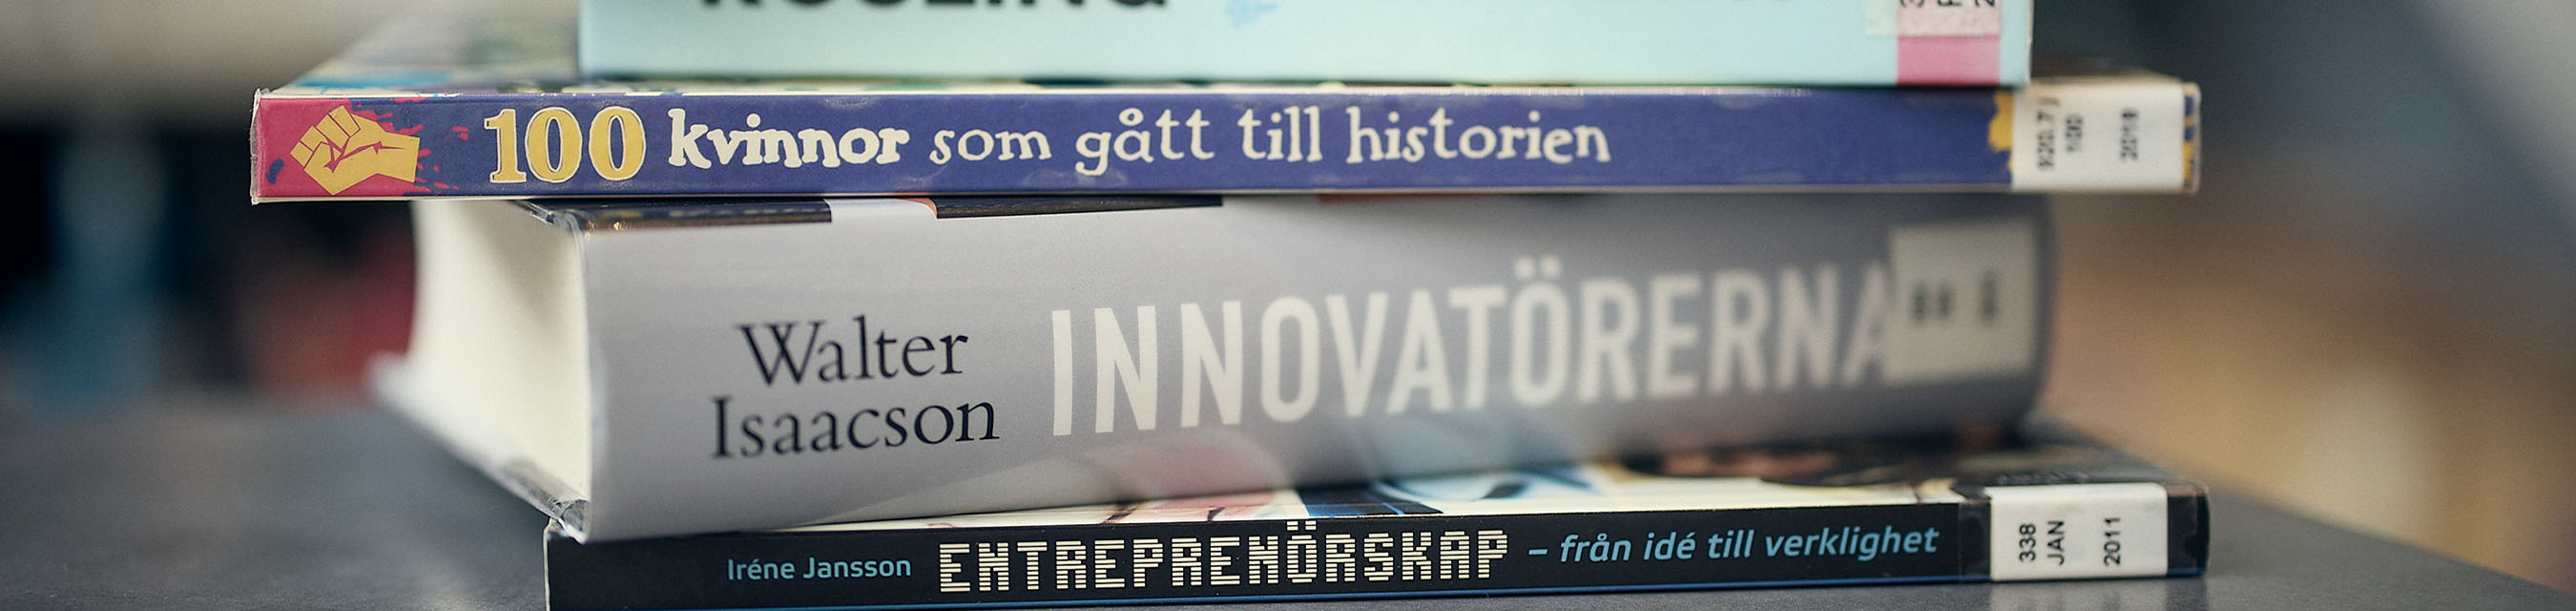 En boktrave med böcker med titlar som handlar om innovation och entreprenörskap. 